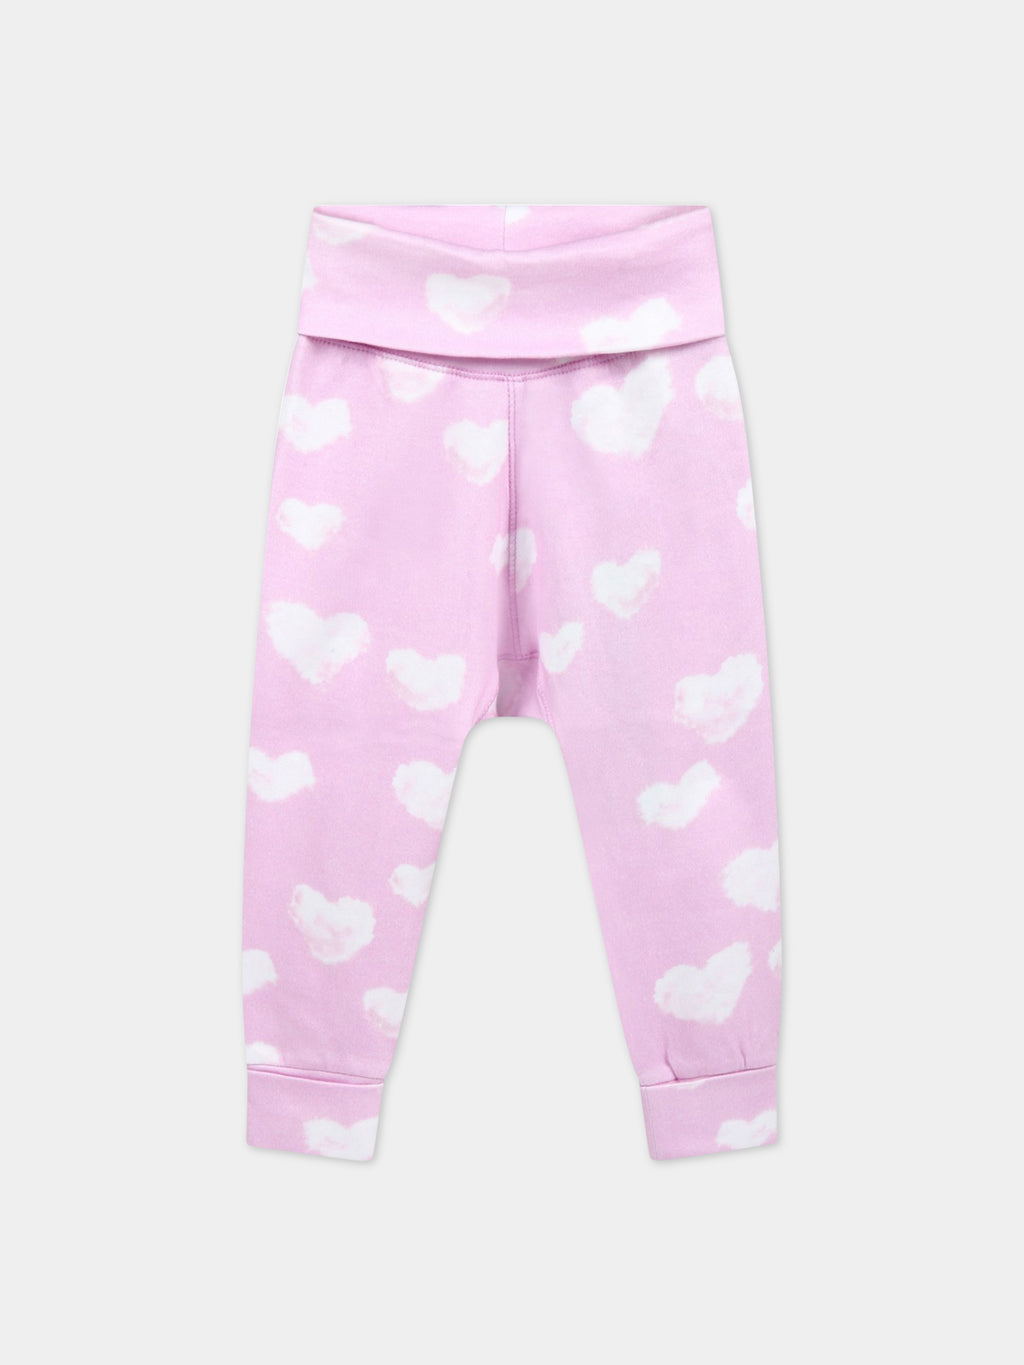 Pantalon rose de survêtement pour bébé enfants avec nuages